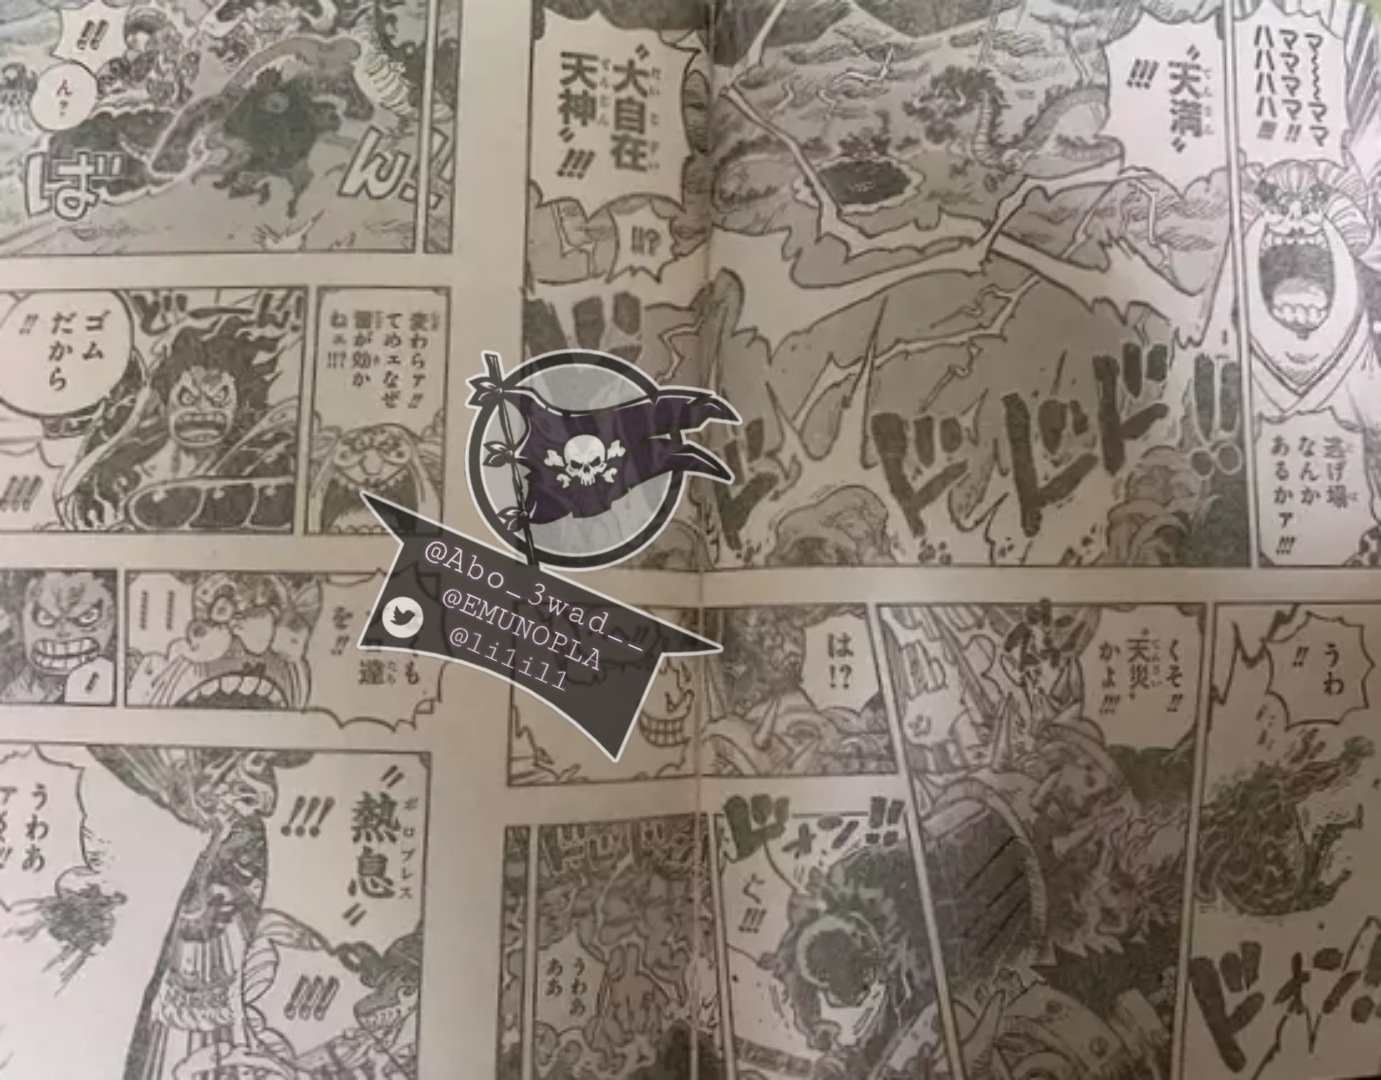 Spoiler One Piece Chapter 1002 Spoiler Summaries And Images Worstgen